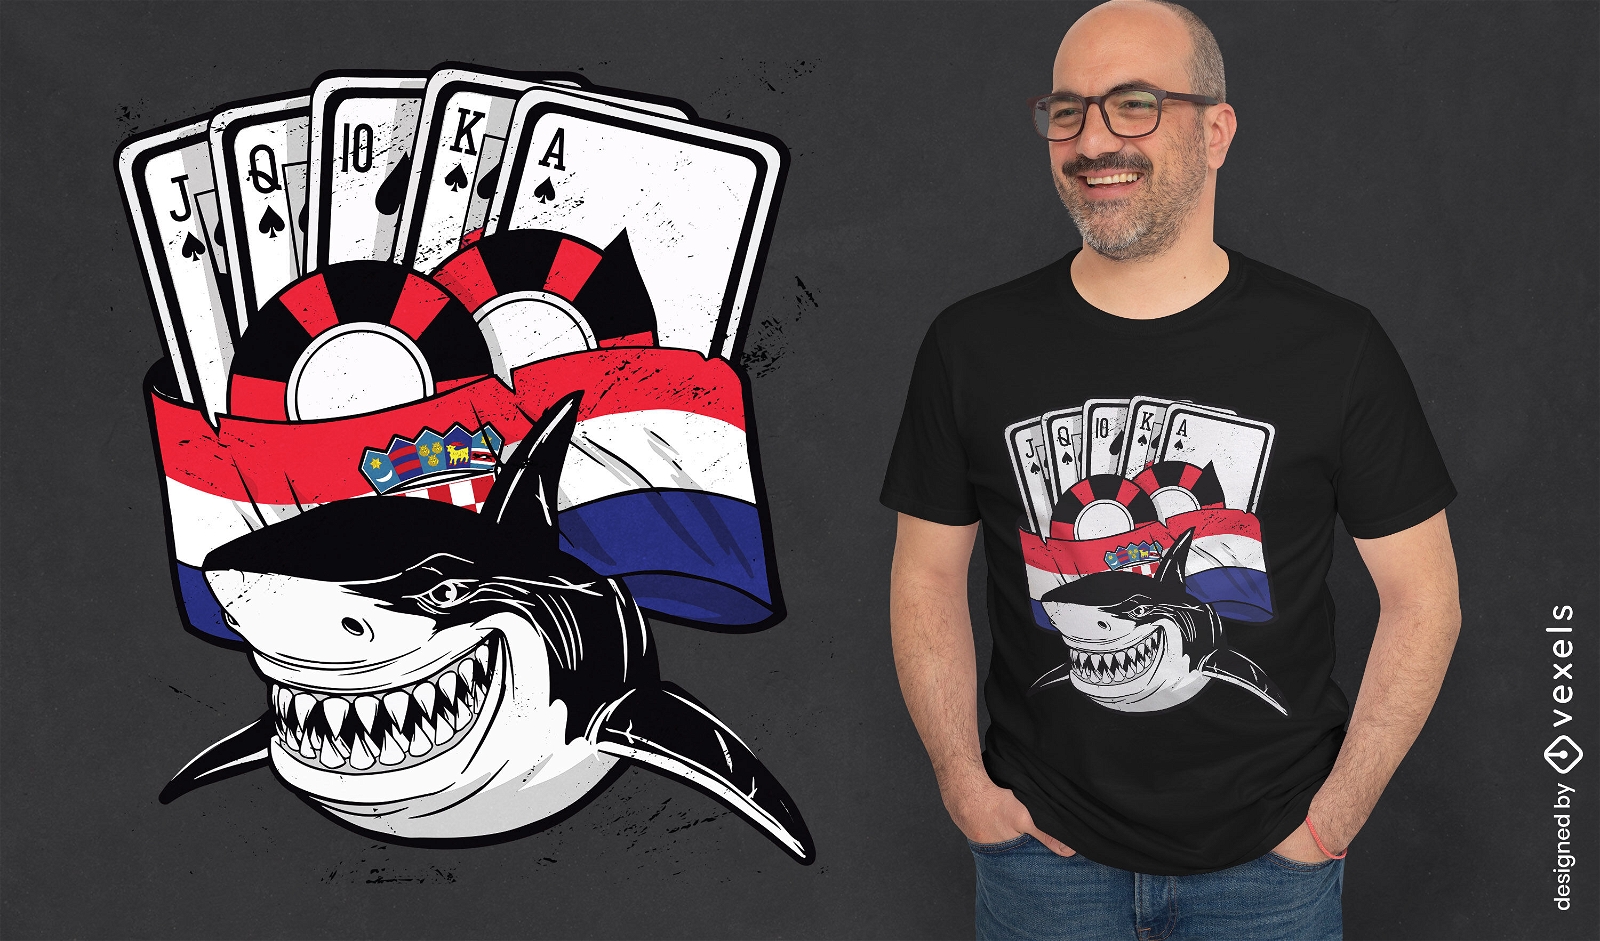 Shark playing cards Croatia t-shirt design